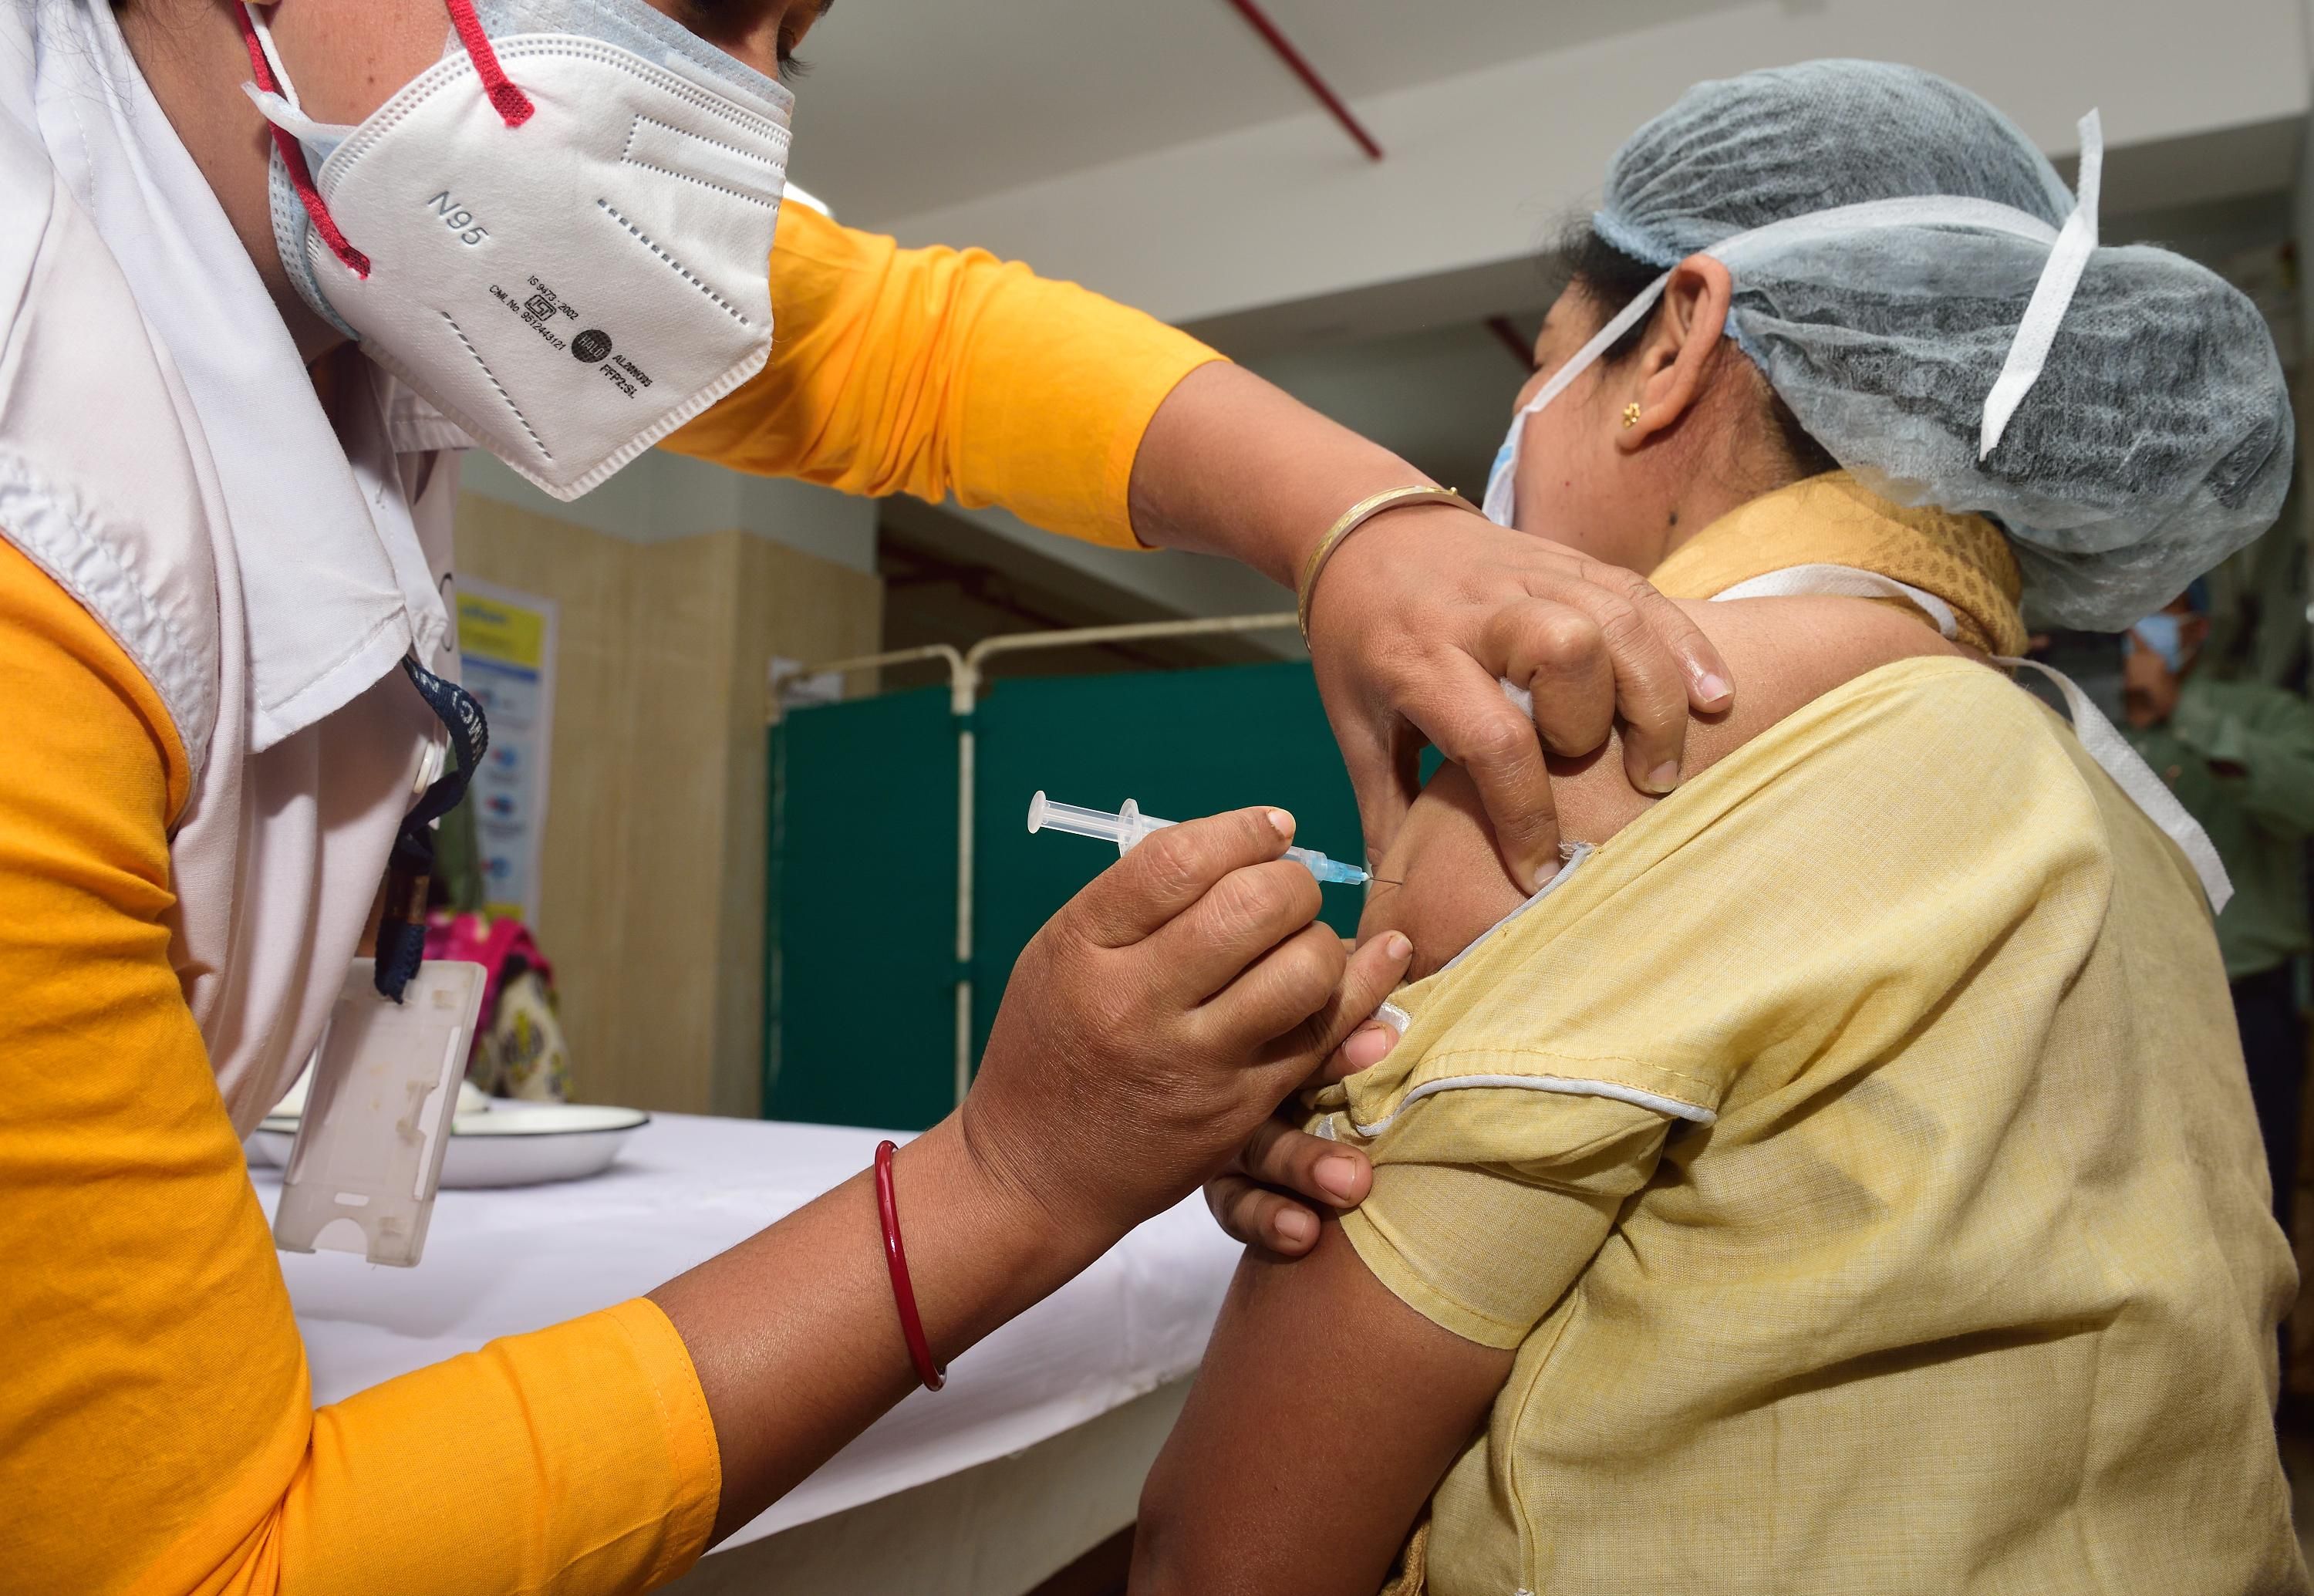 Вакцинация от COVID-19 в Индии: 580 человек получили побочные эффекты, 2 летальных случая